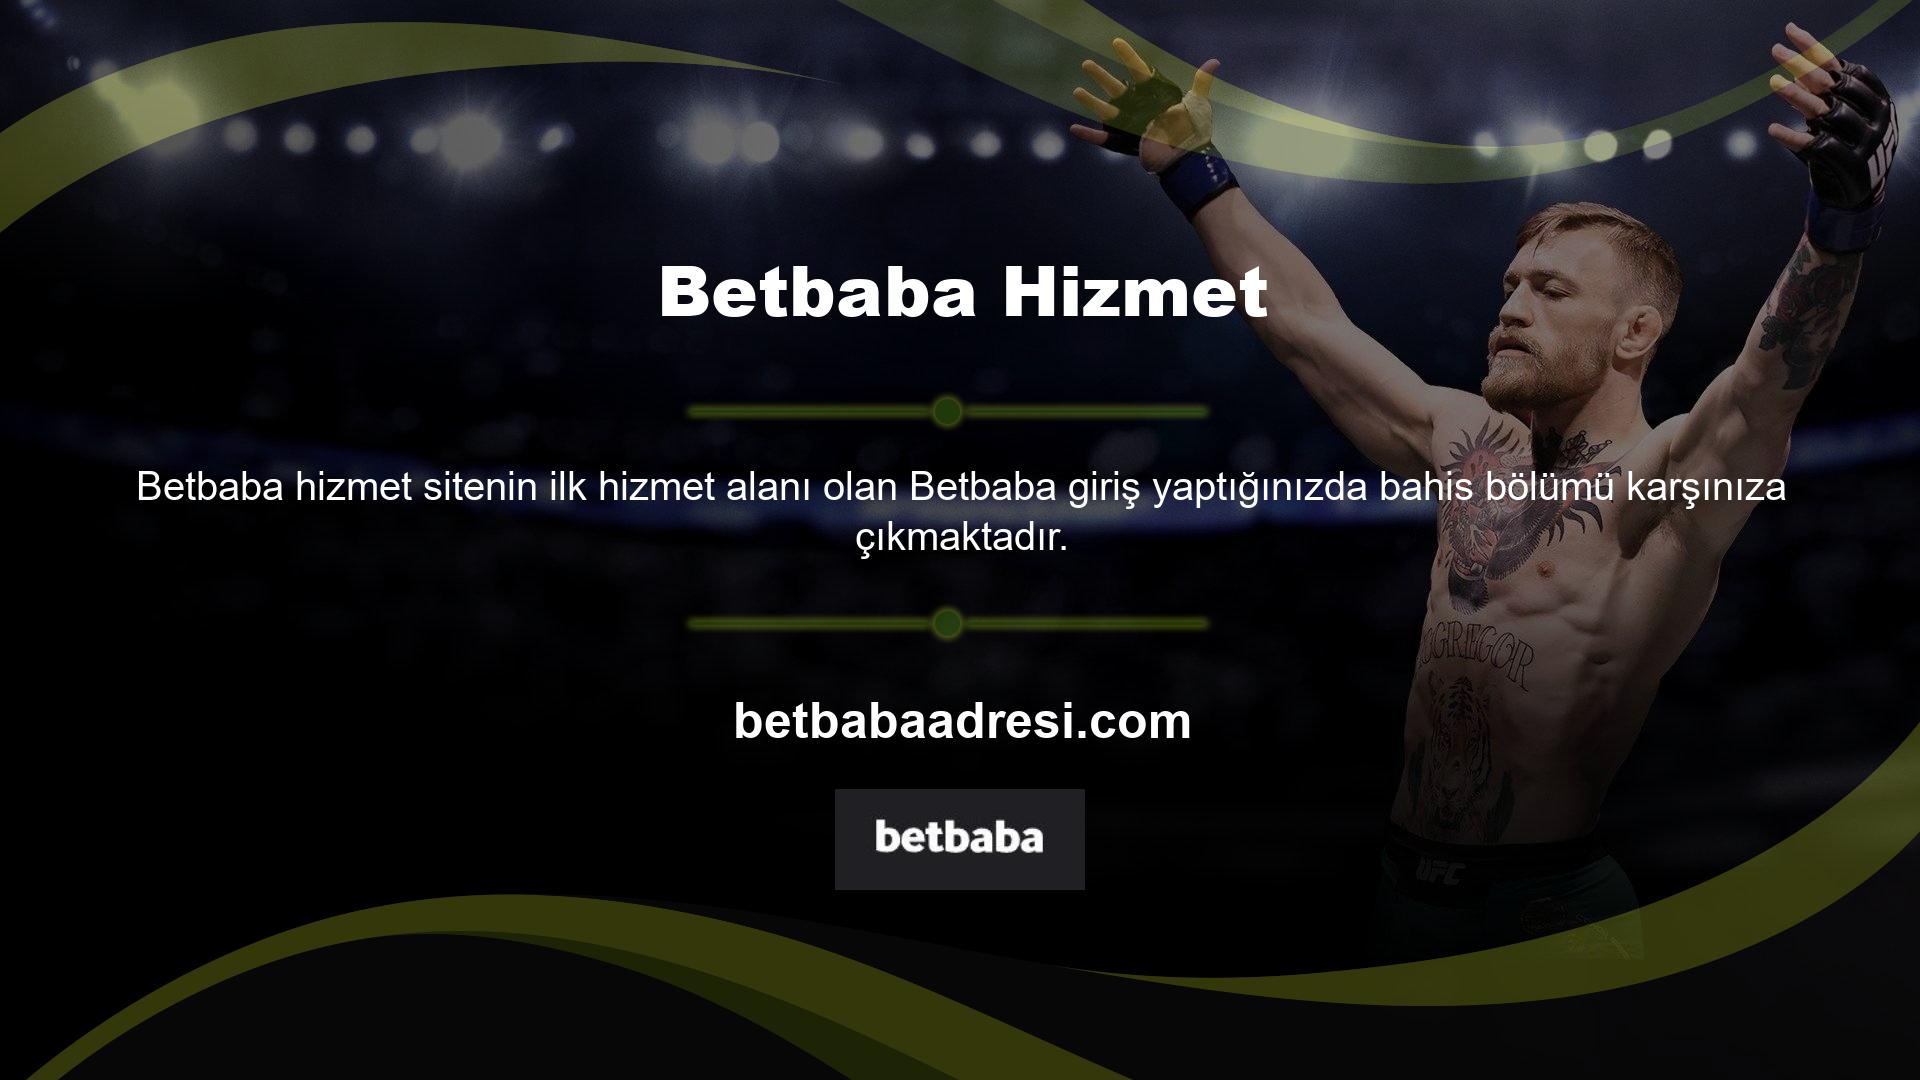 Betbaba erişim ve bahis hizmetleri öncelikle spor bahisleri ve canlı bahis oyunlarına odaklanmaktadır